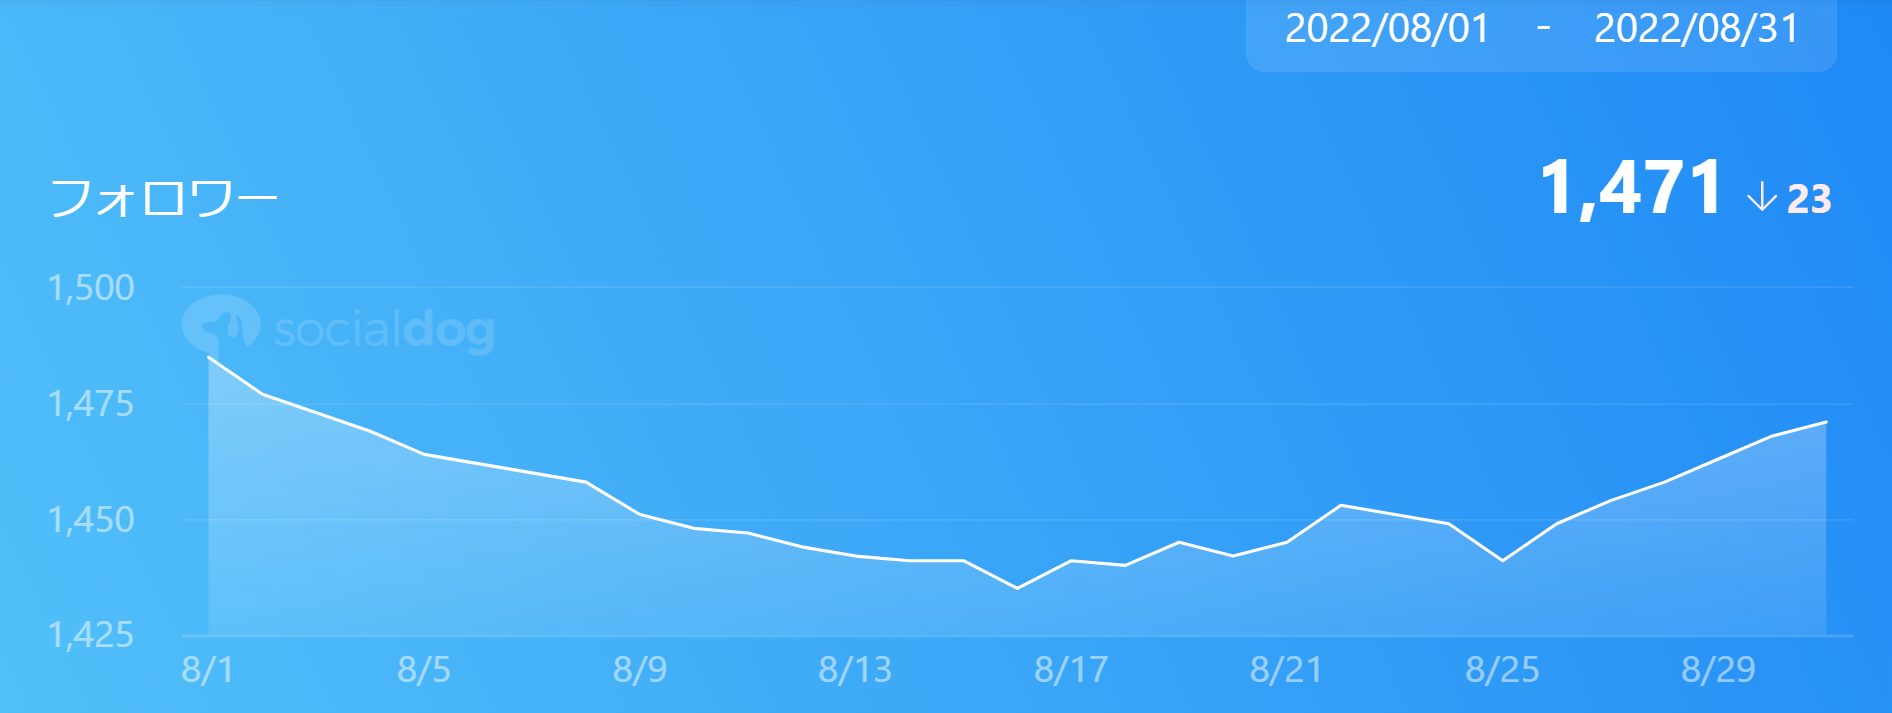 ブログ運営11ヶ月目のTwitterフォロワー数